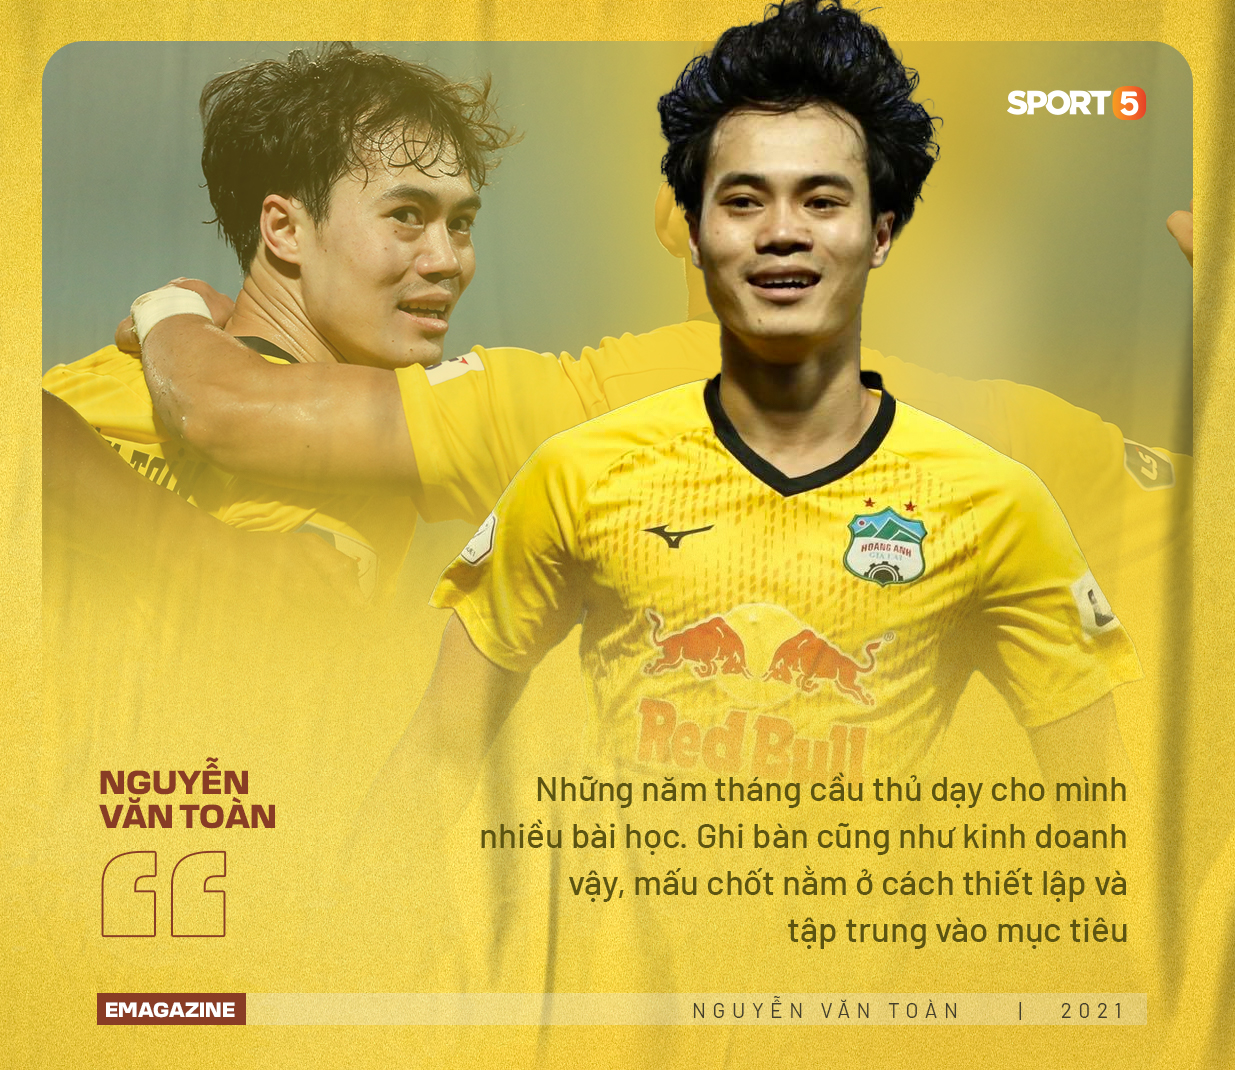 Nguyễn Văn Toàn: "Tôi muốn được nhớ đến là một cầu thủ thành công, và doanh nhân thành đạt"  - Ảnh 2.